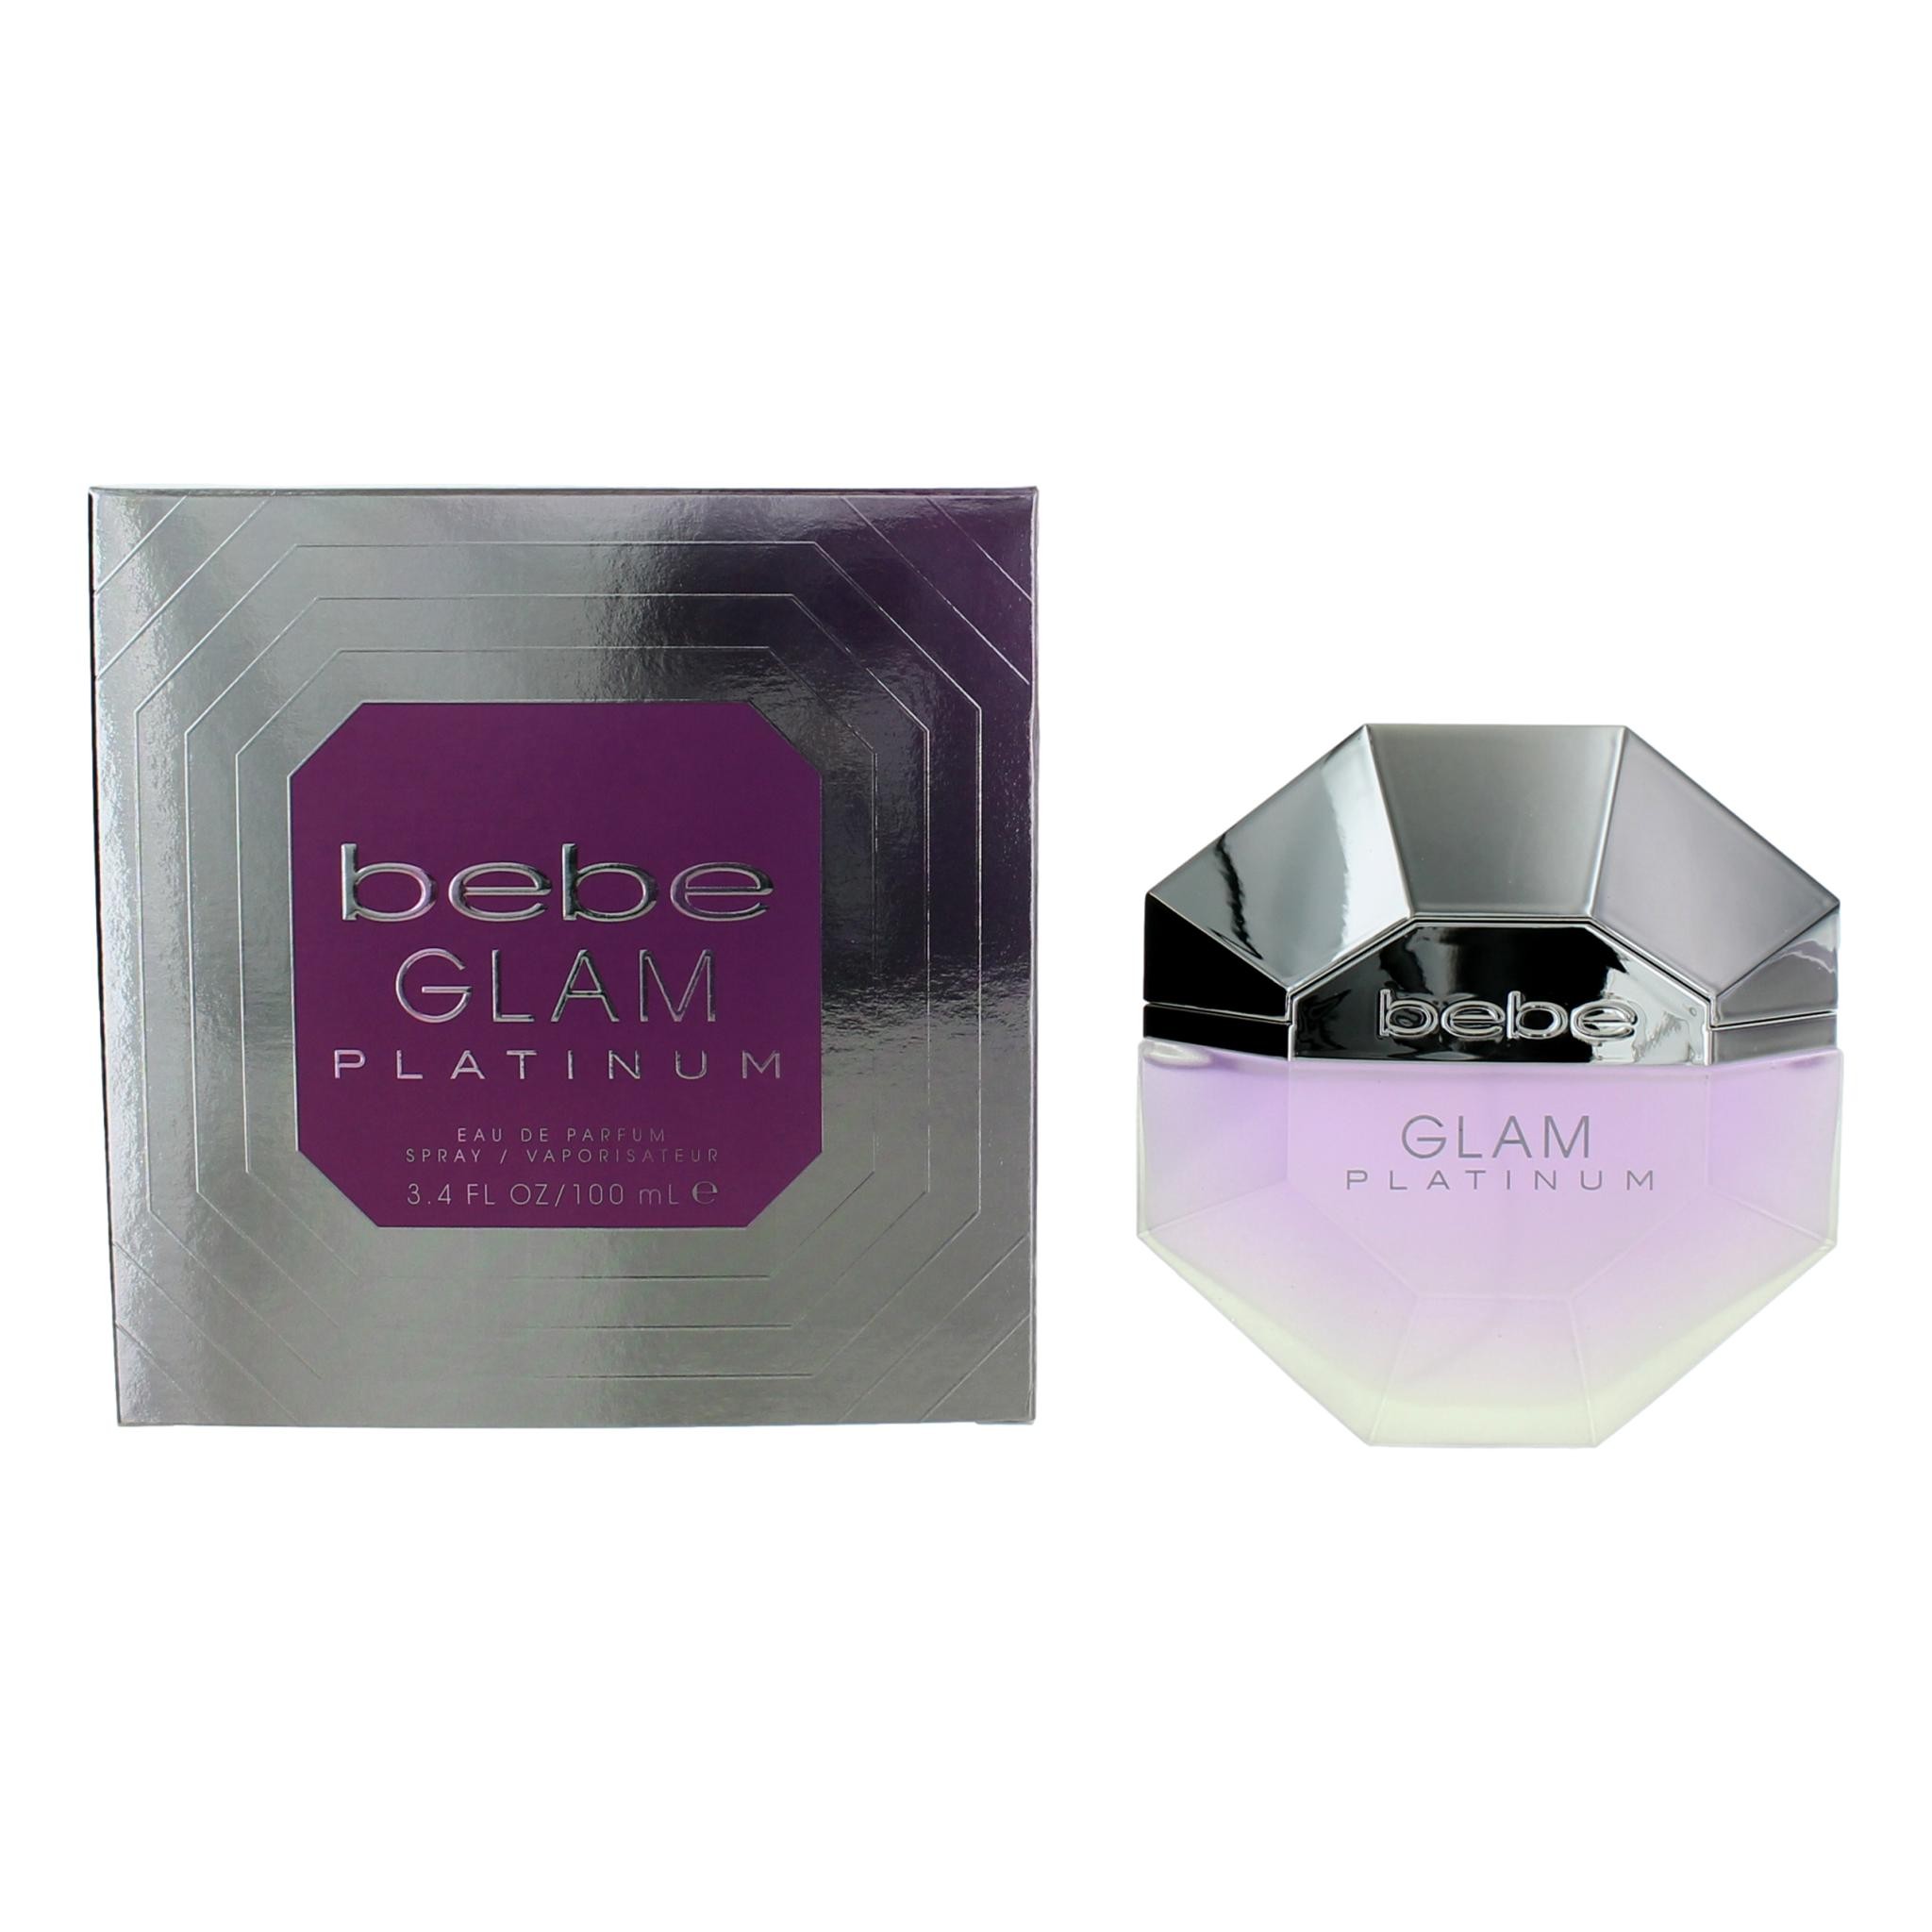 bebe Glam Platinum by bebe 3.4 oz Eau de Parfum Spray for Women